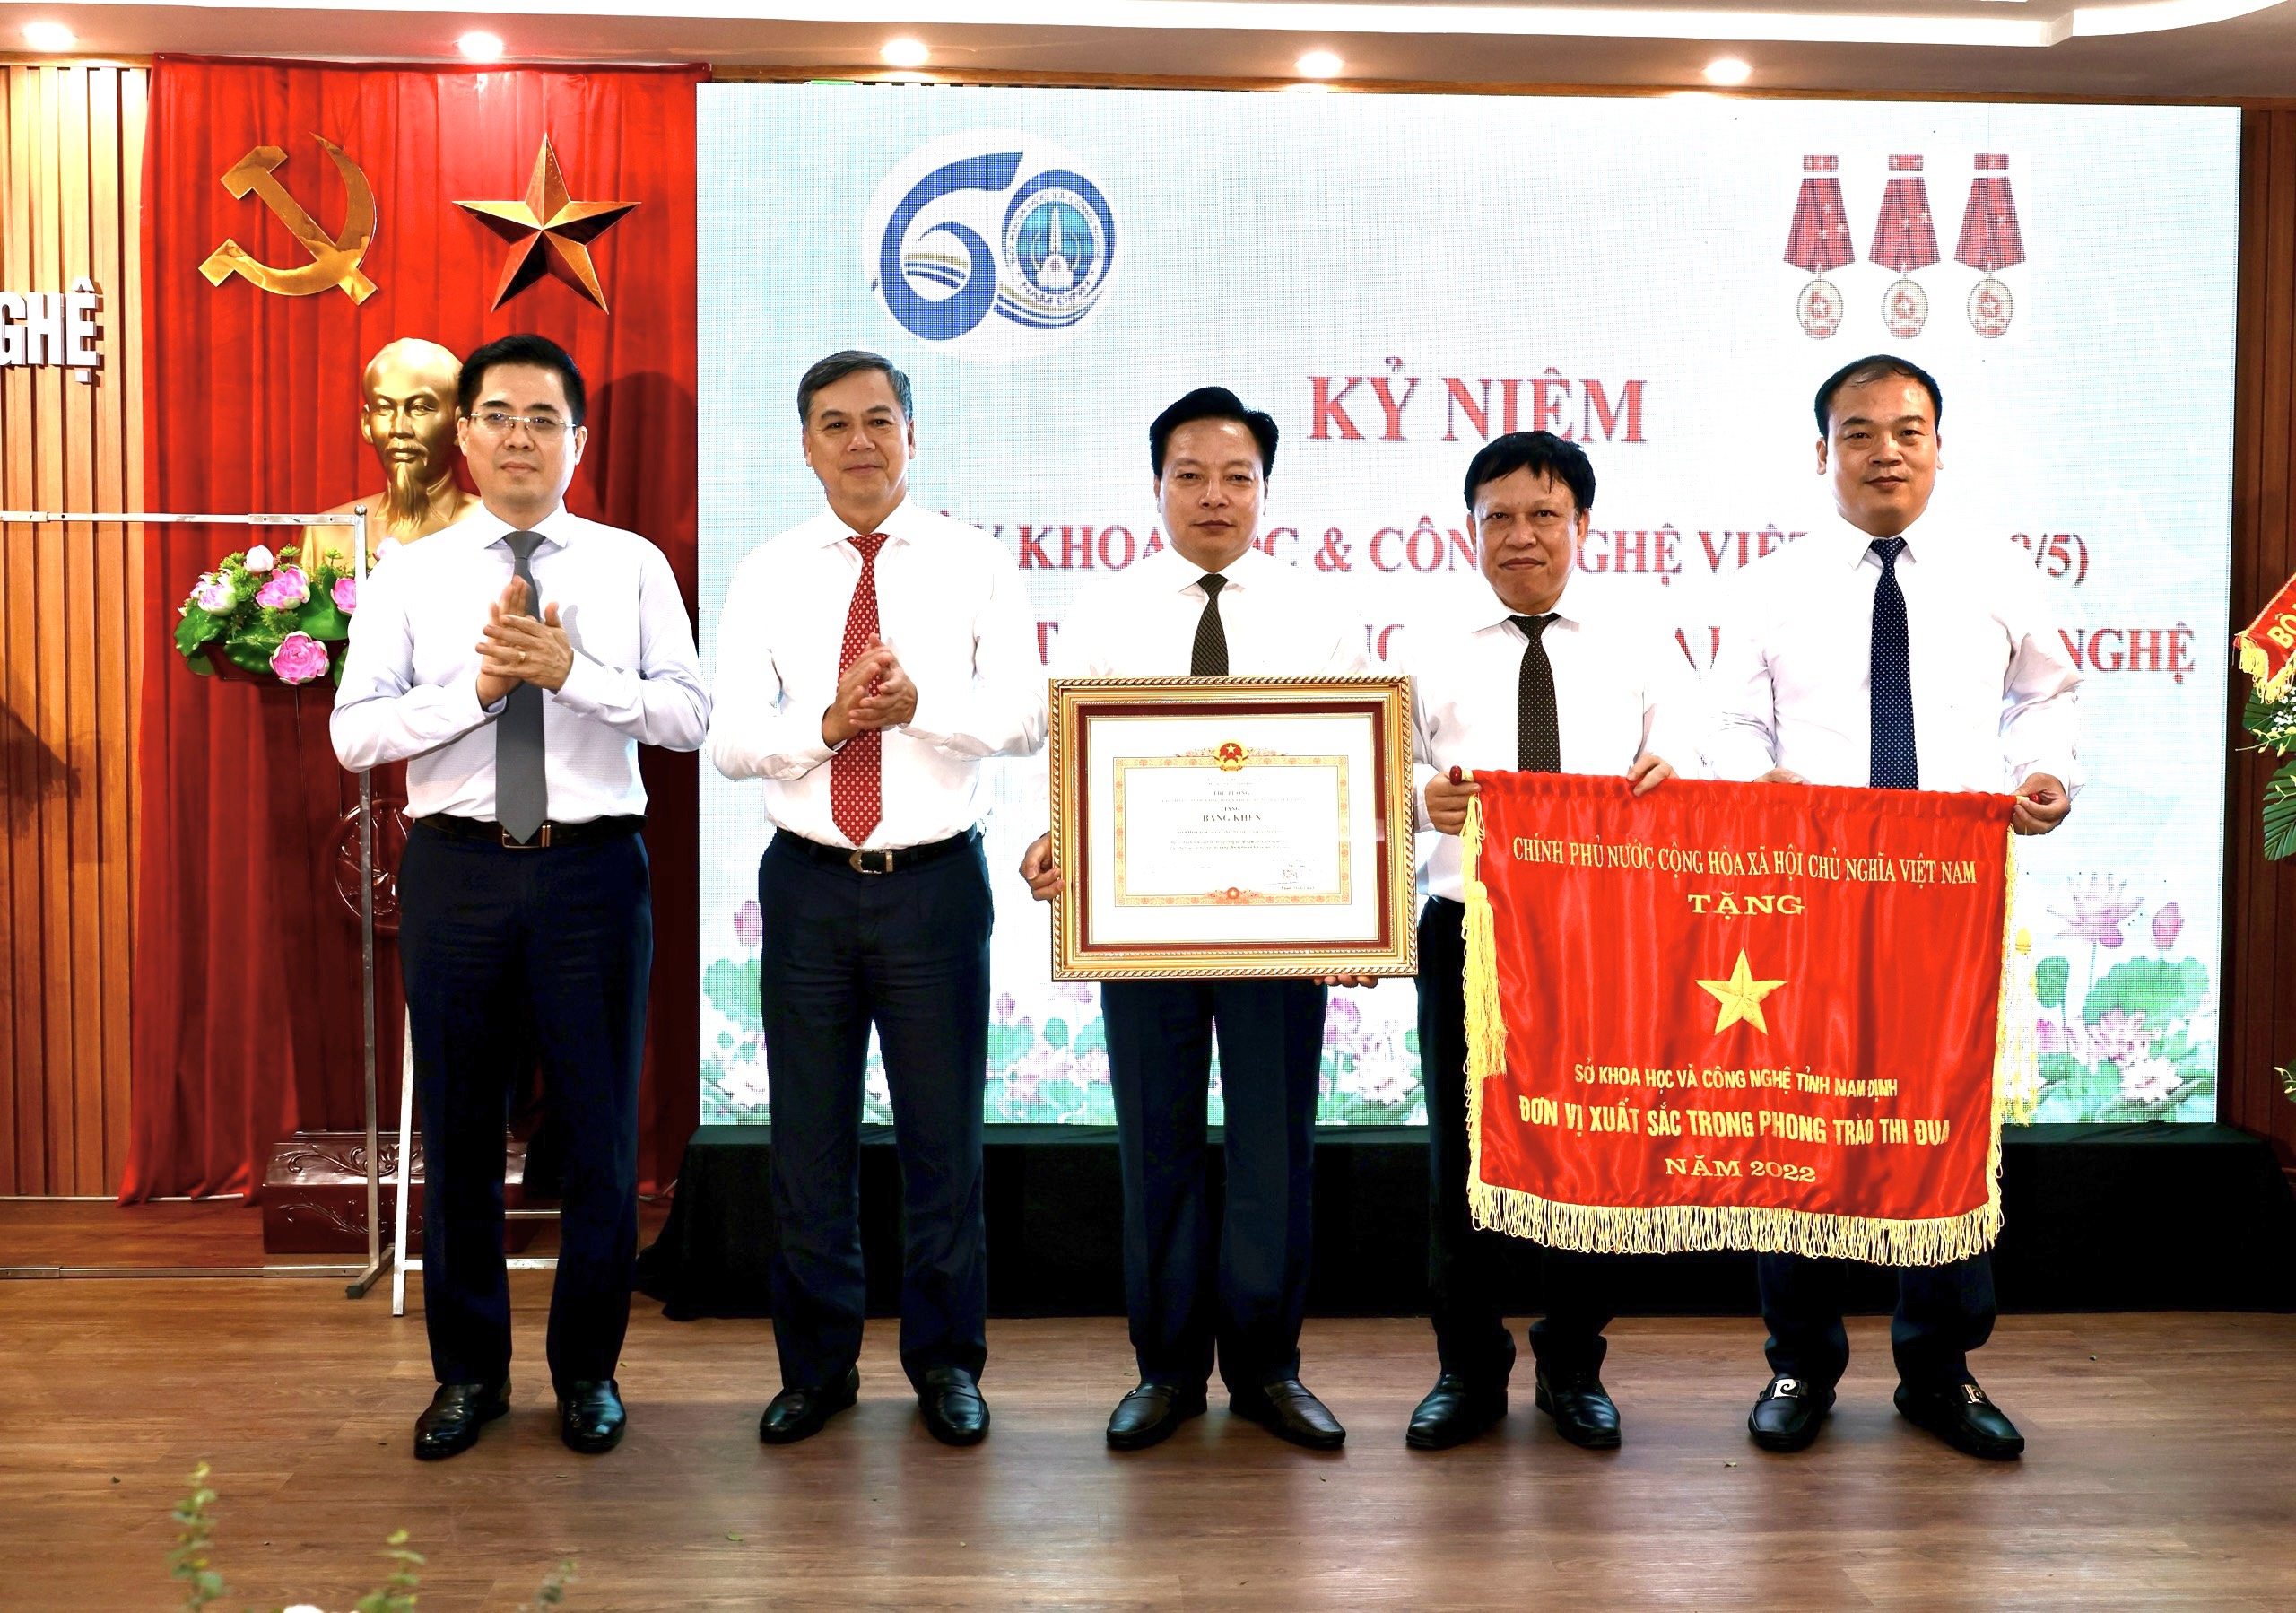 Kỷ niệm 60 năm thành lập ngành Khoa học và Công nghệ tỉnh Nam Định